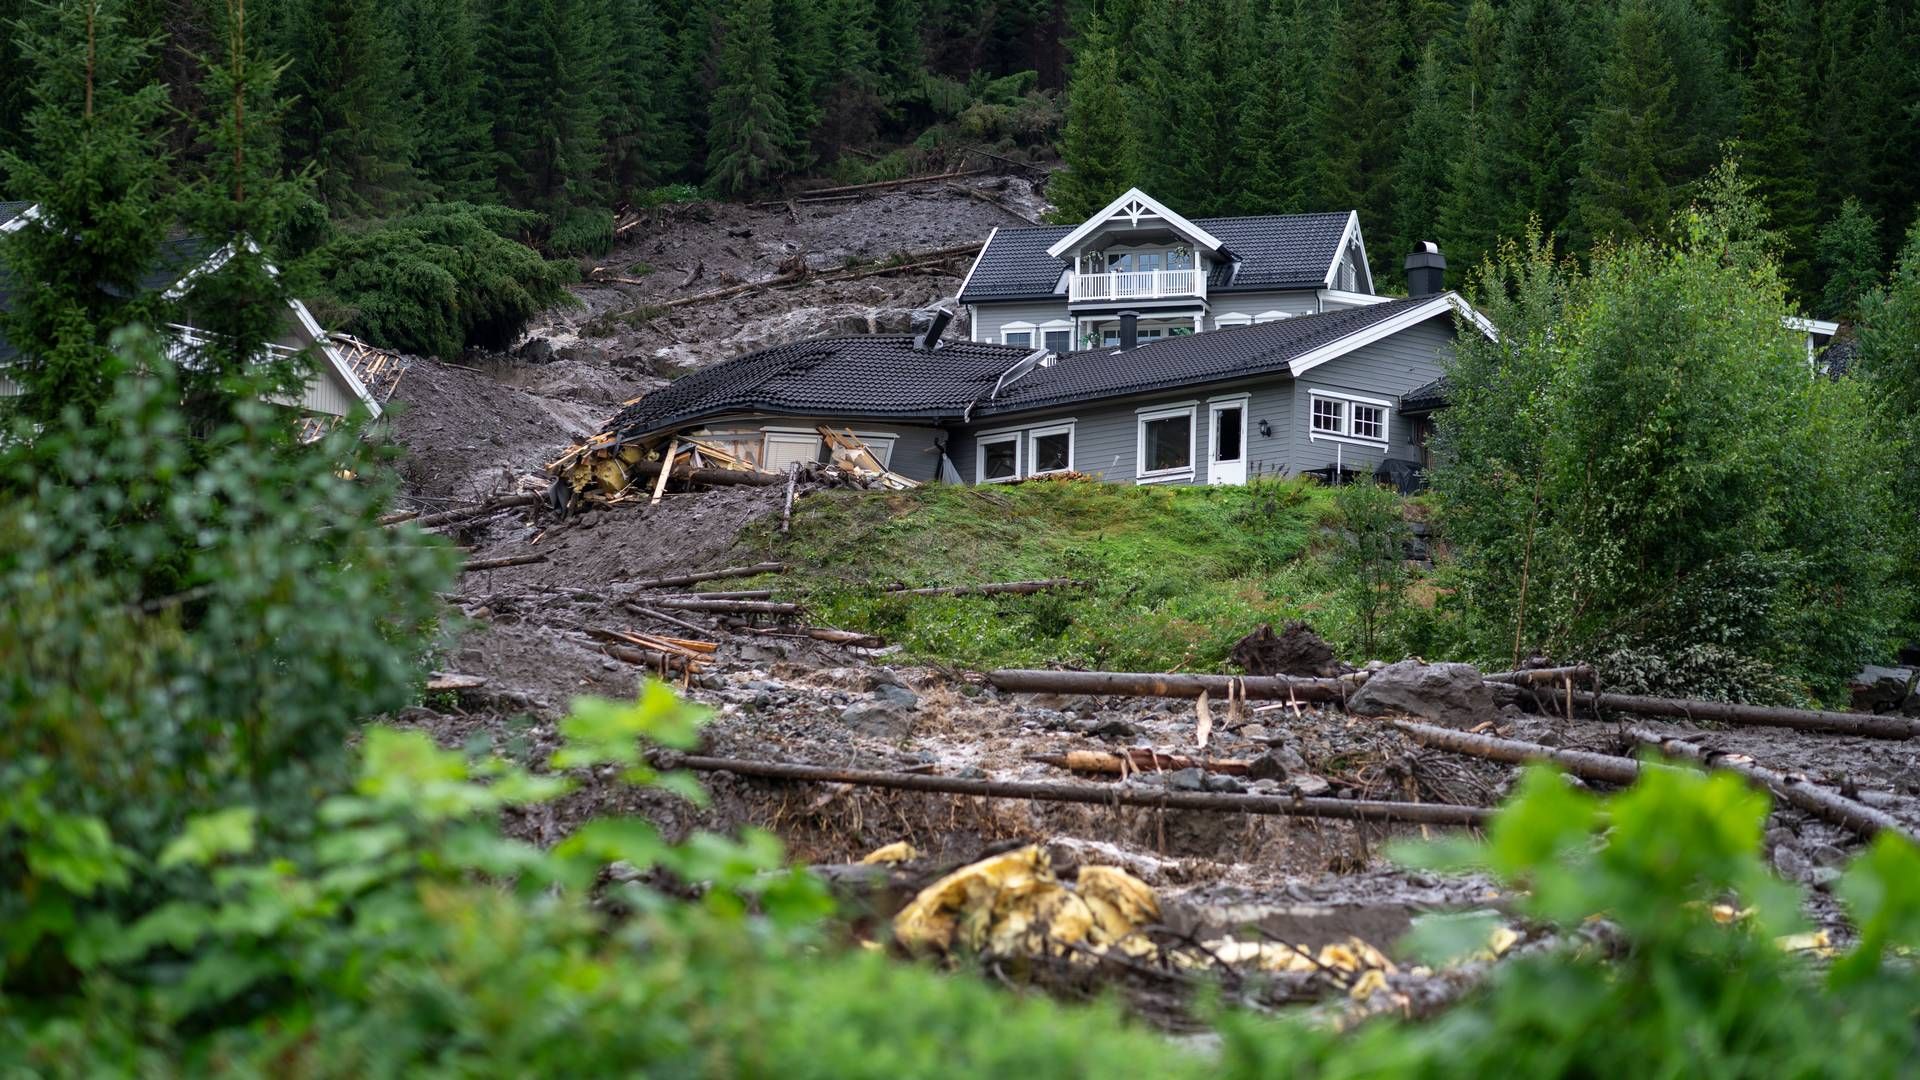 Flere hus er tatt av et skred som har gått gjennom et boligområde i Bagn i Valdres. Ekremværet Hans har ført til flere skred og stor vannføring i elver og vassdrag. | Foto: Cornelius Poppe / NTB